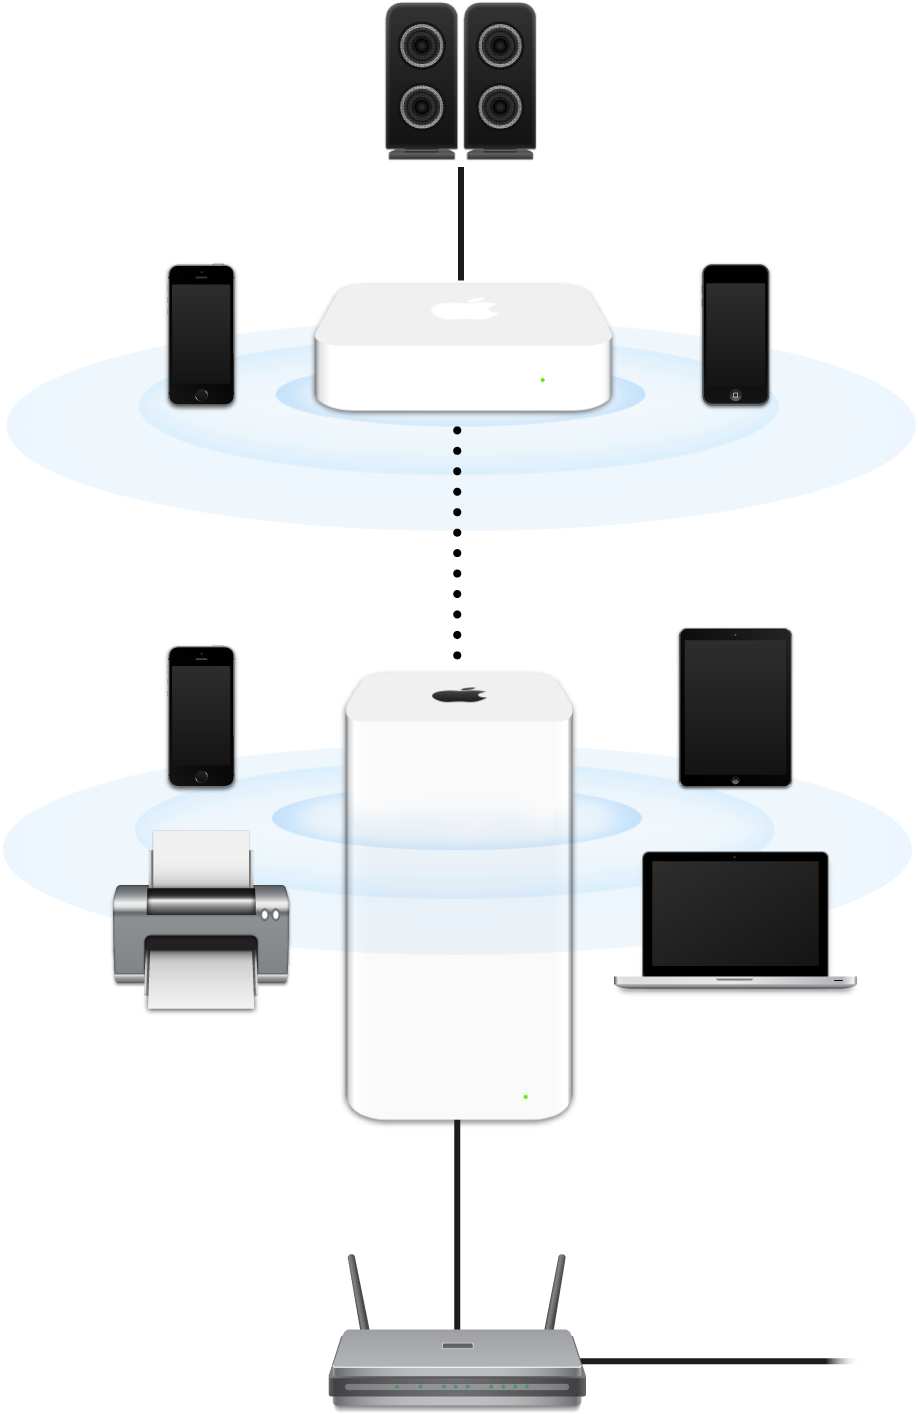 AirPort Extreme और AirPort Express सहित कोई विस्तारित नेटवर्क मॉडम से कनेक्ट है और अनेक प्रकार के उपकरणों का प्रसारण कर रहा है।